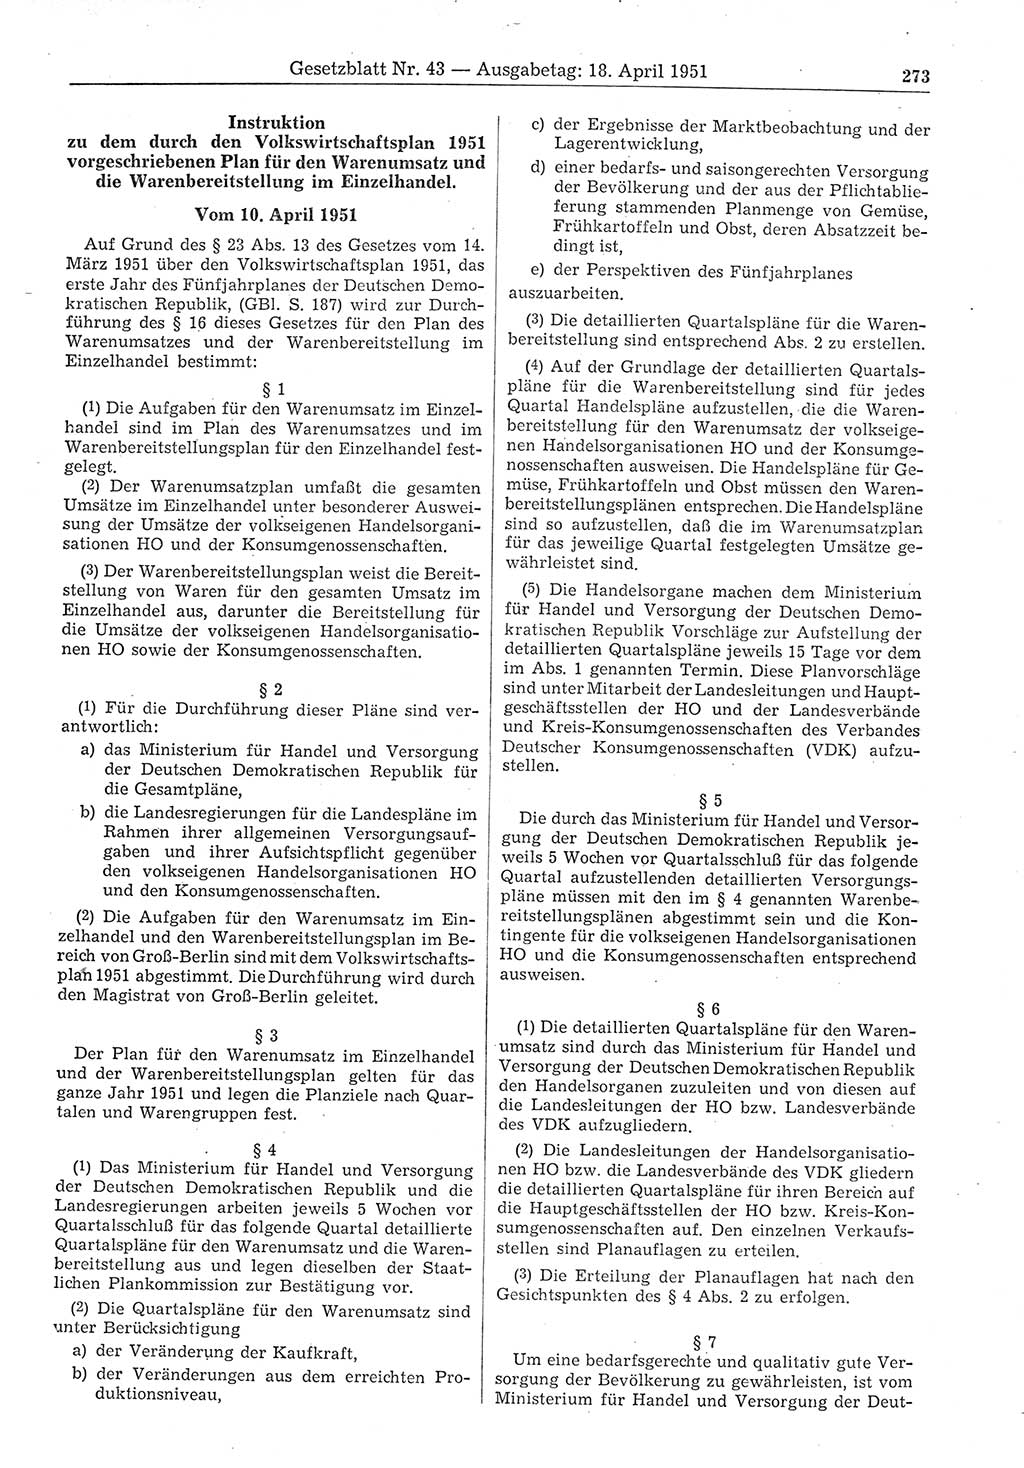 Gesetzblatt (GBl.) der Deutschen Demokratischen Republik (DDR) 1951, Seite 273 (GBl. DDR 1951, S. 273)